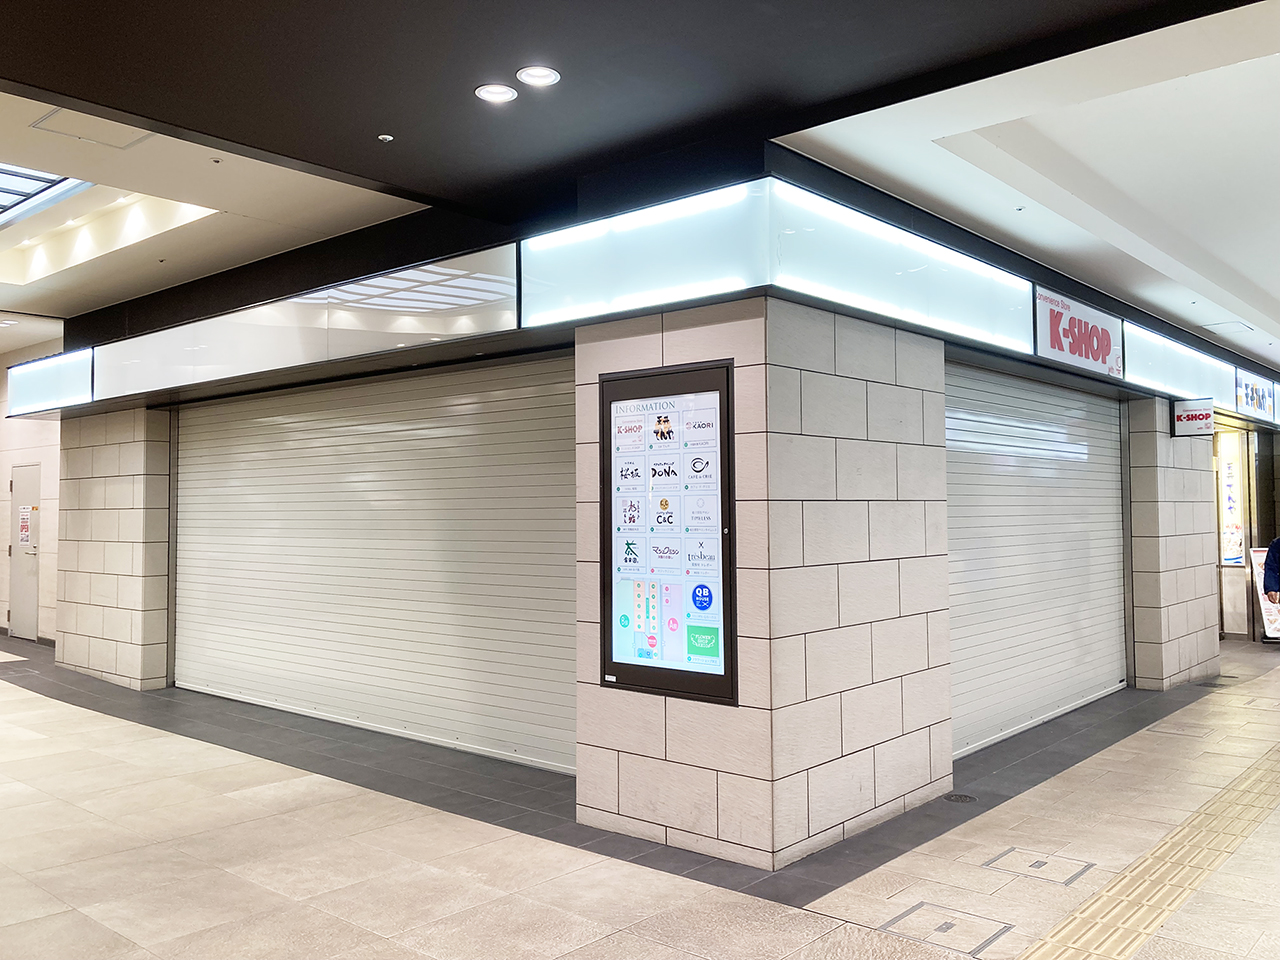 セブン-イレブンは10月7日オープンへ・聖蹟桜ヶ丘駅改札口前でオープン情報相次ぐ！